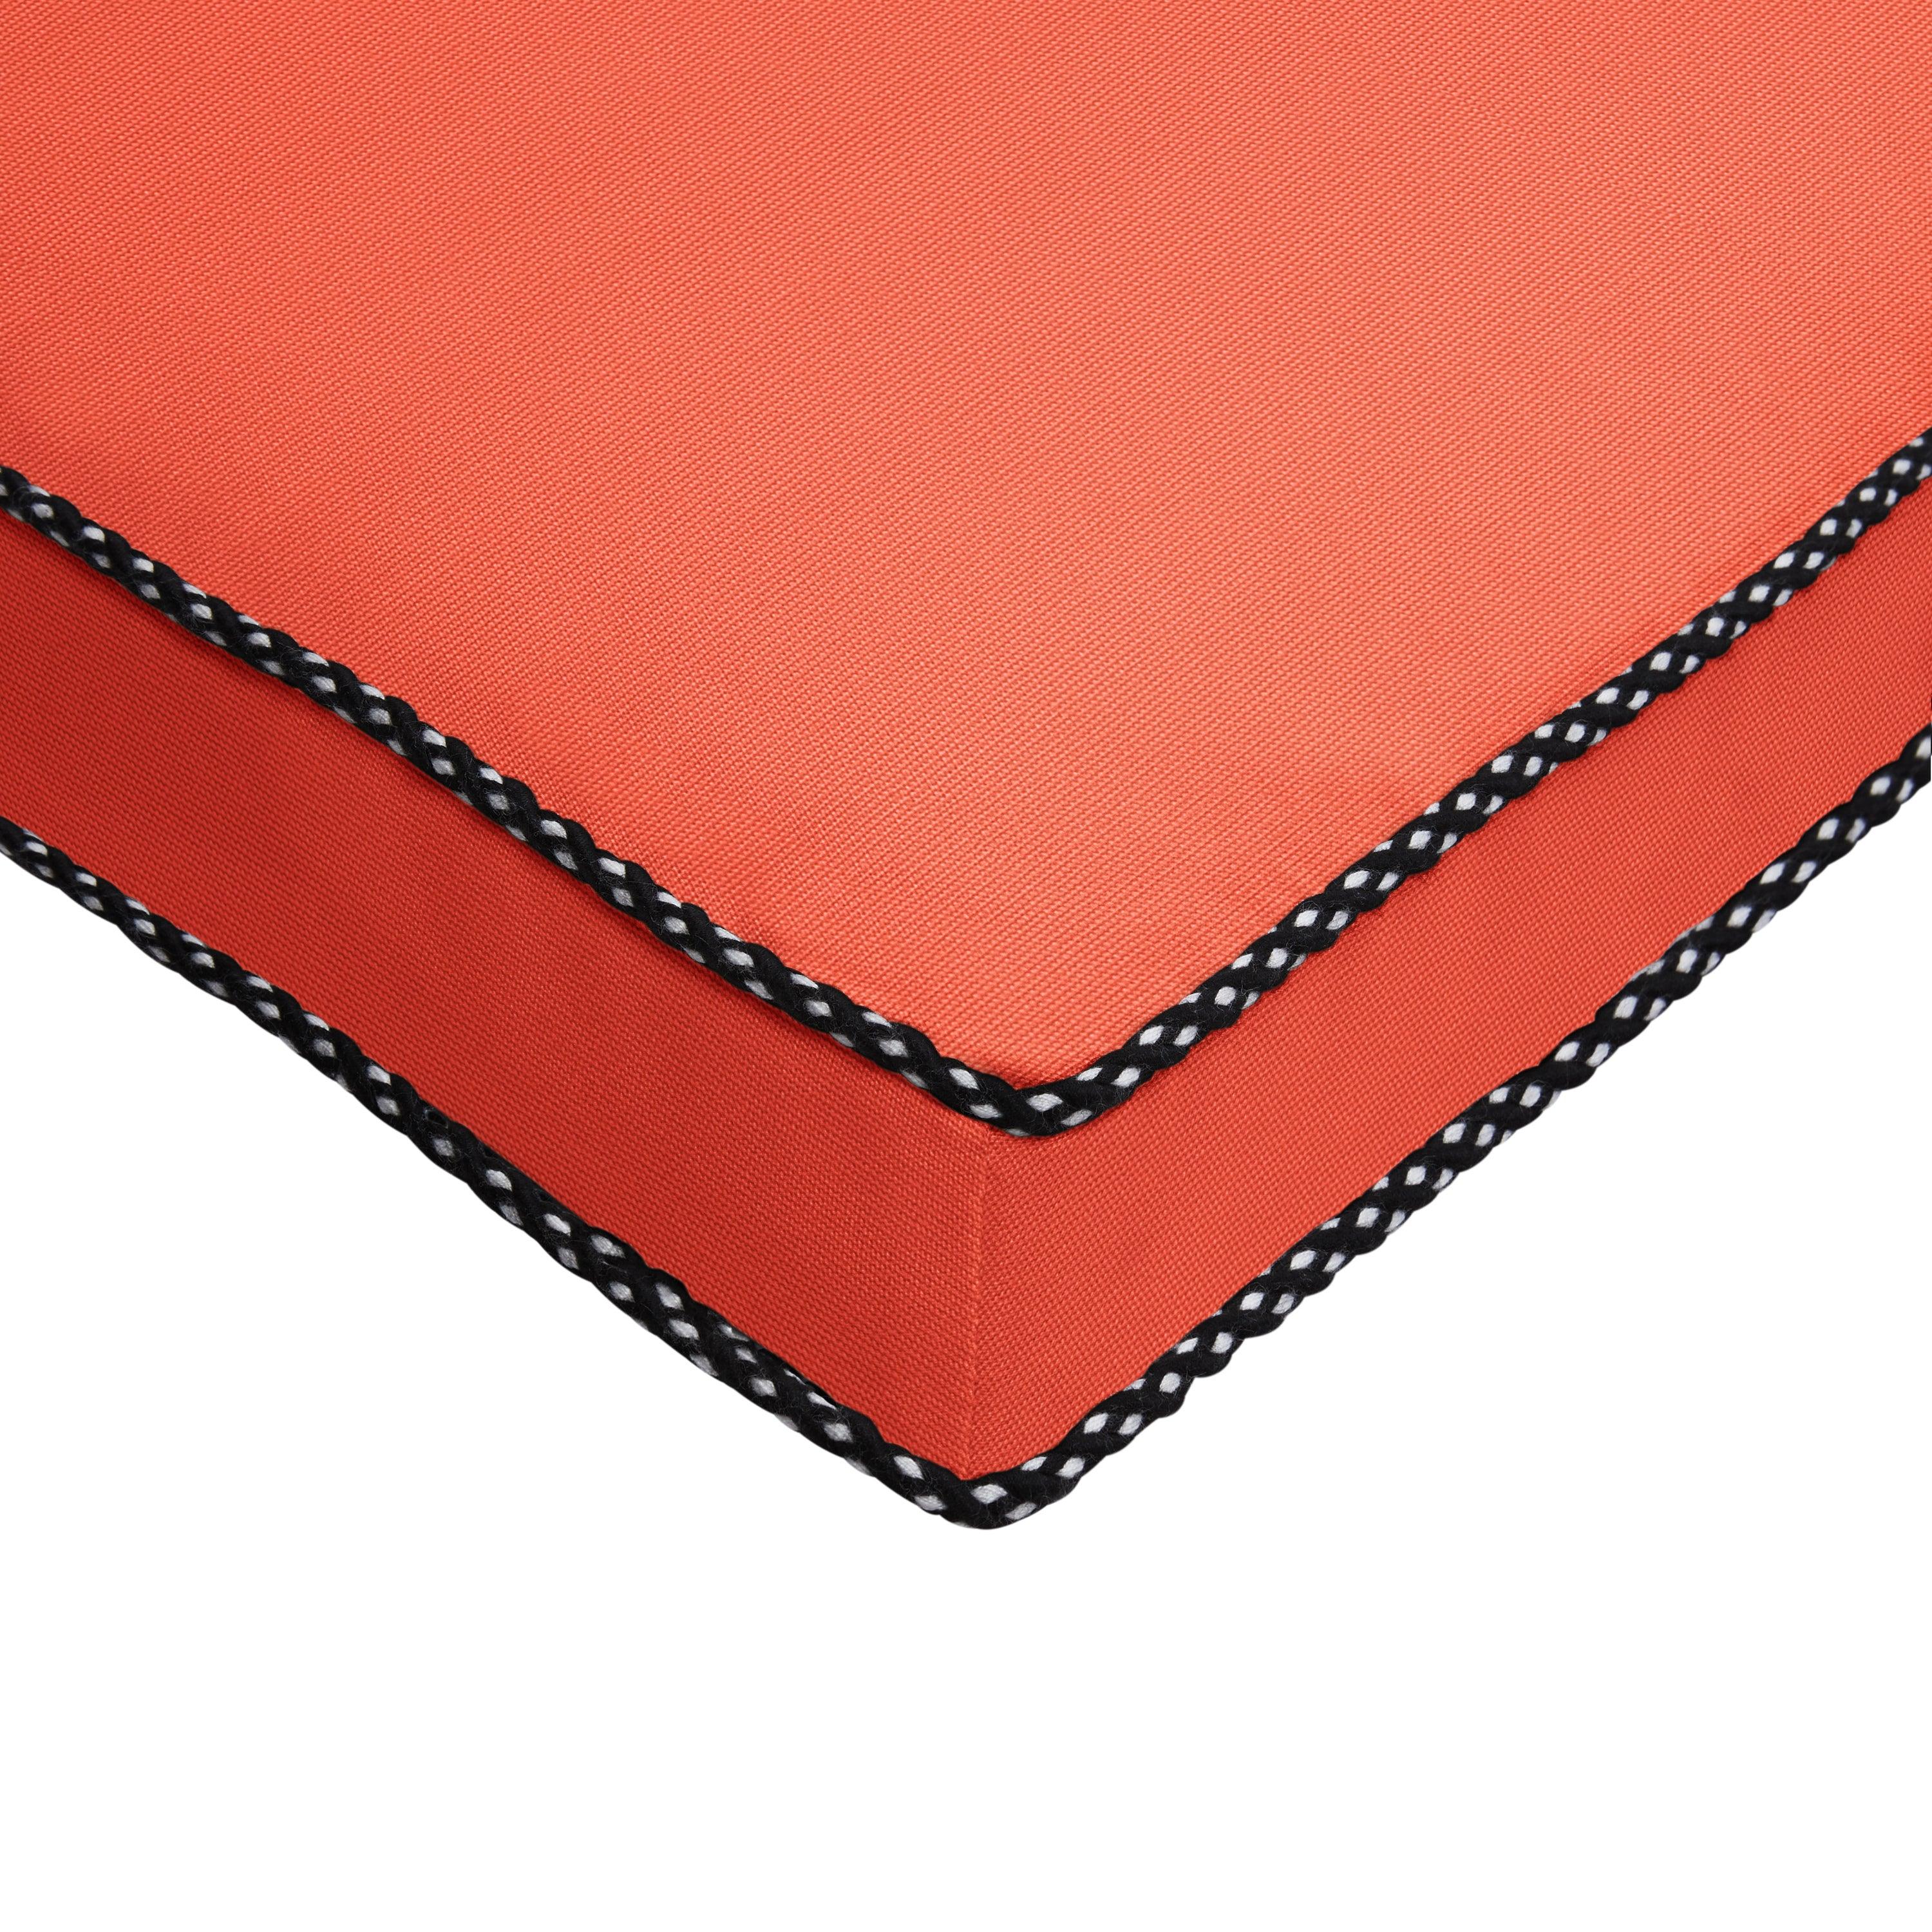 Sunbrella Braided Cord Cushion - Sorra Home